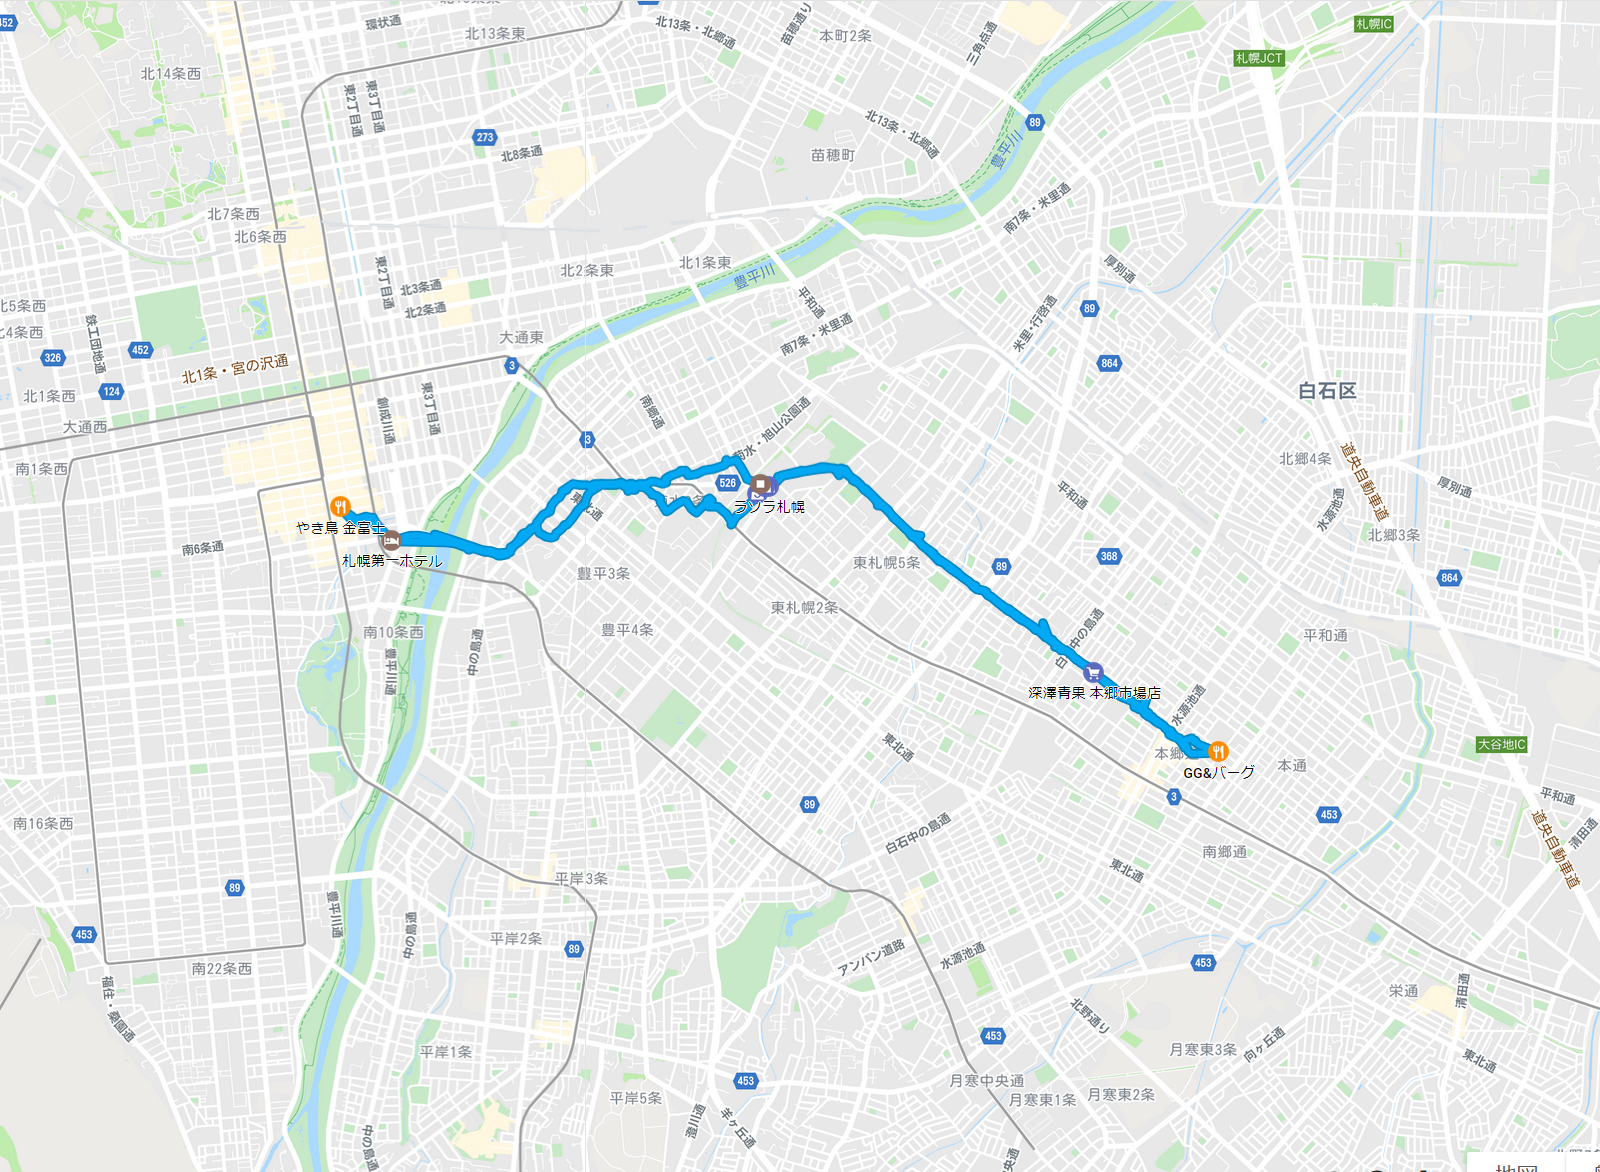 2020年3月24日のタイムライン　札幌第一ホテルとGG&バーグ往復など全行程を徒歩で移動